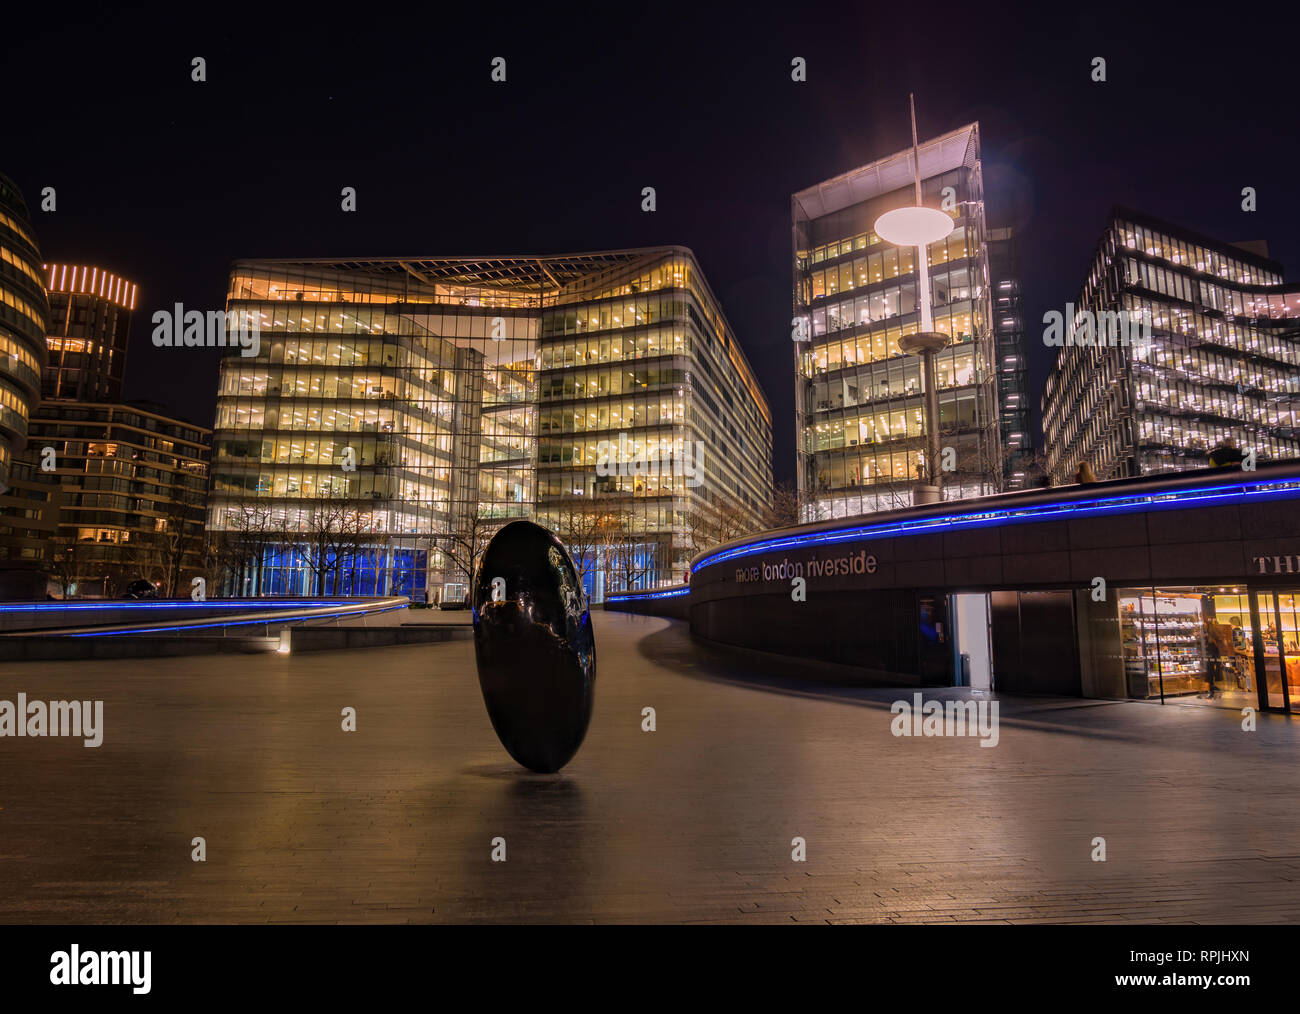 Londres, Inglaterra, Reino Unido - 21 de febrero de 2019: forma de huevo símbolo en la plaza de Londres más Riverside en la noche en la ciudad de Londres. Foto de stock